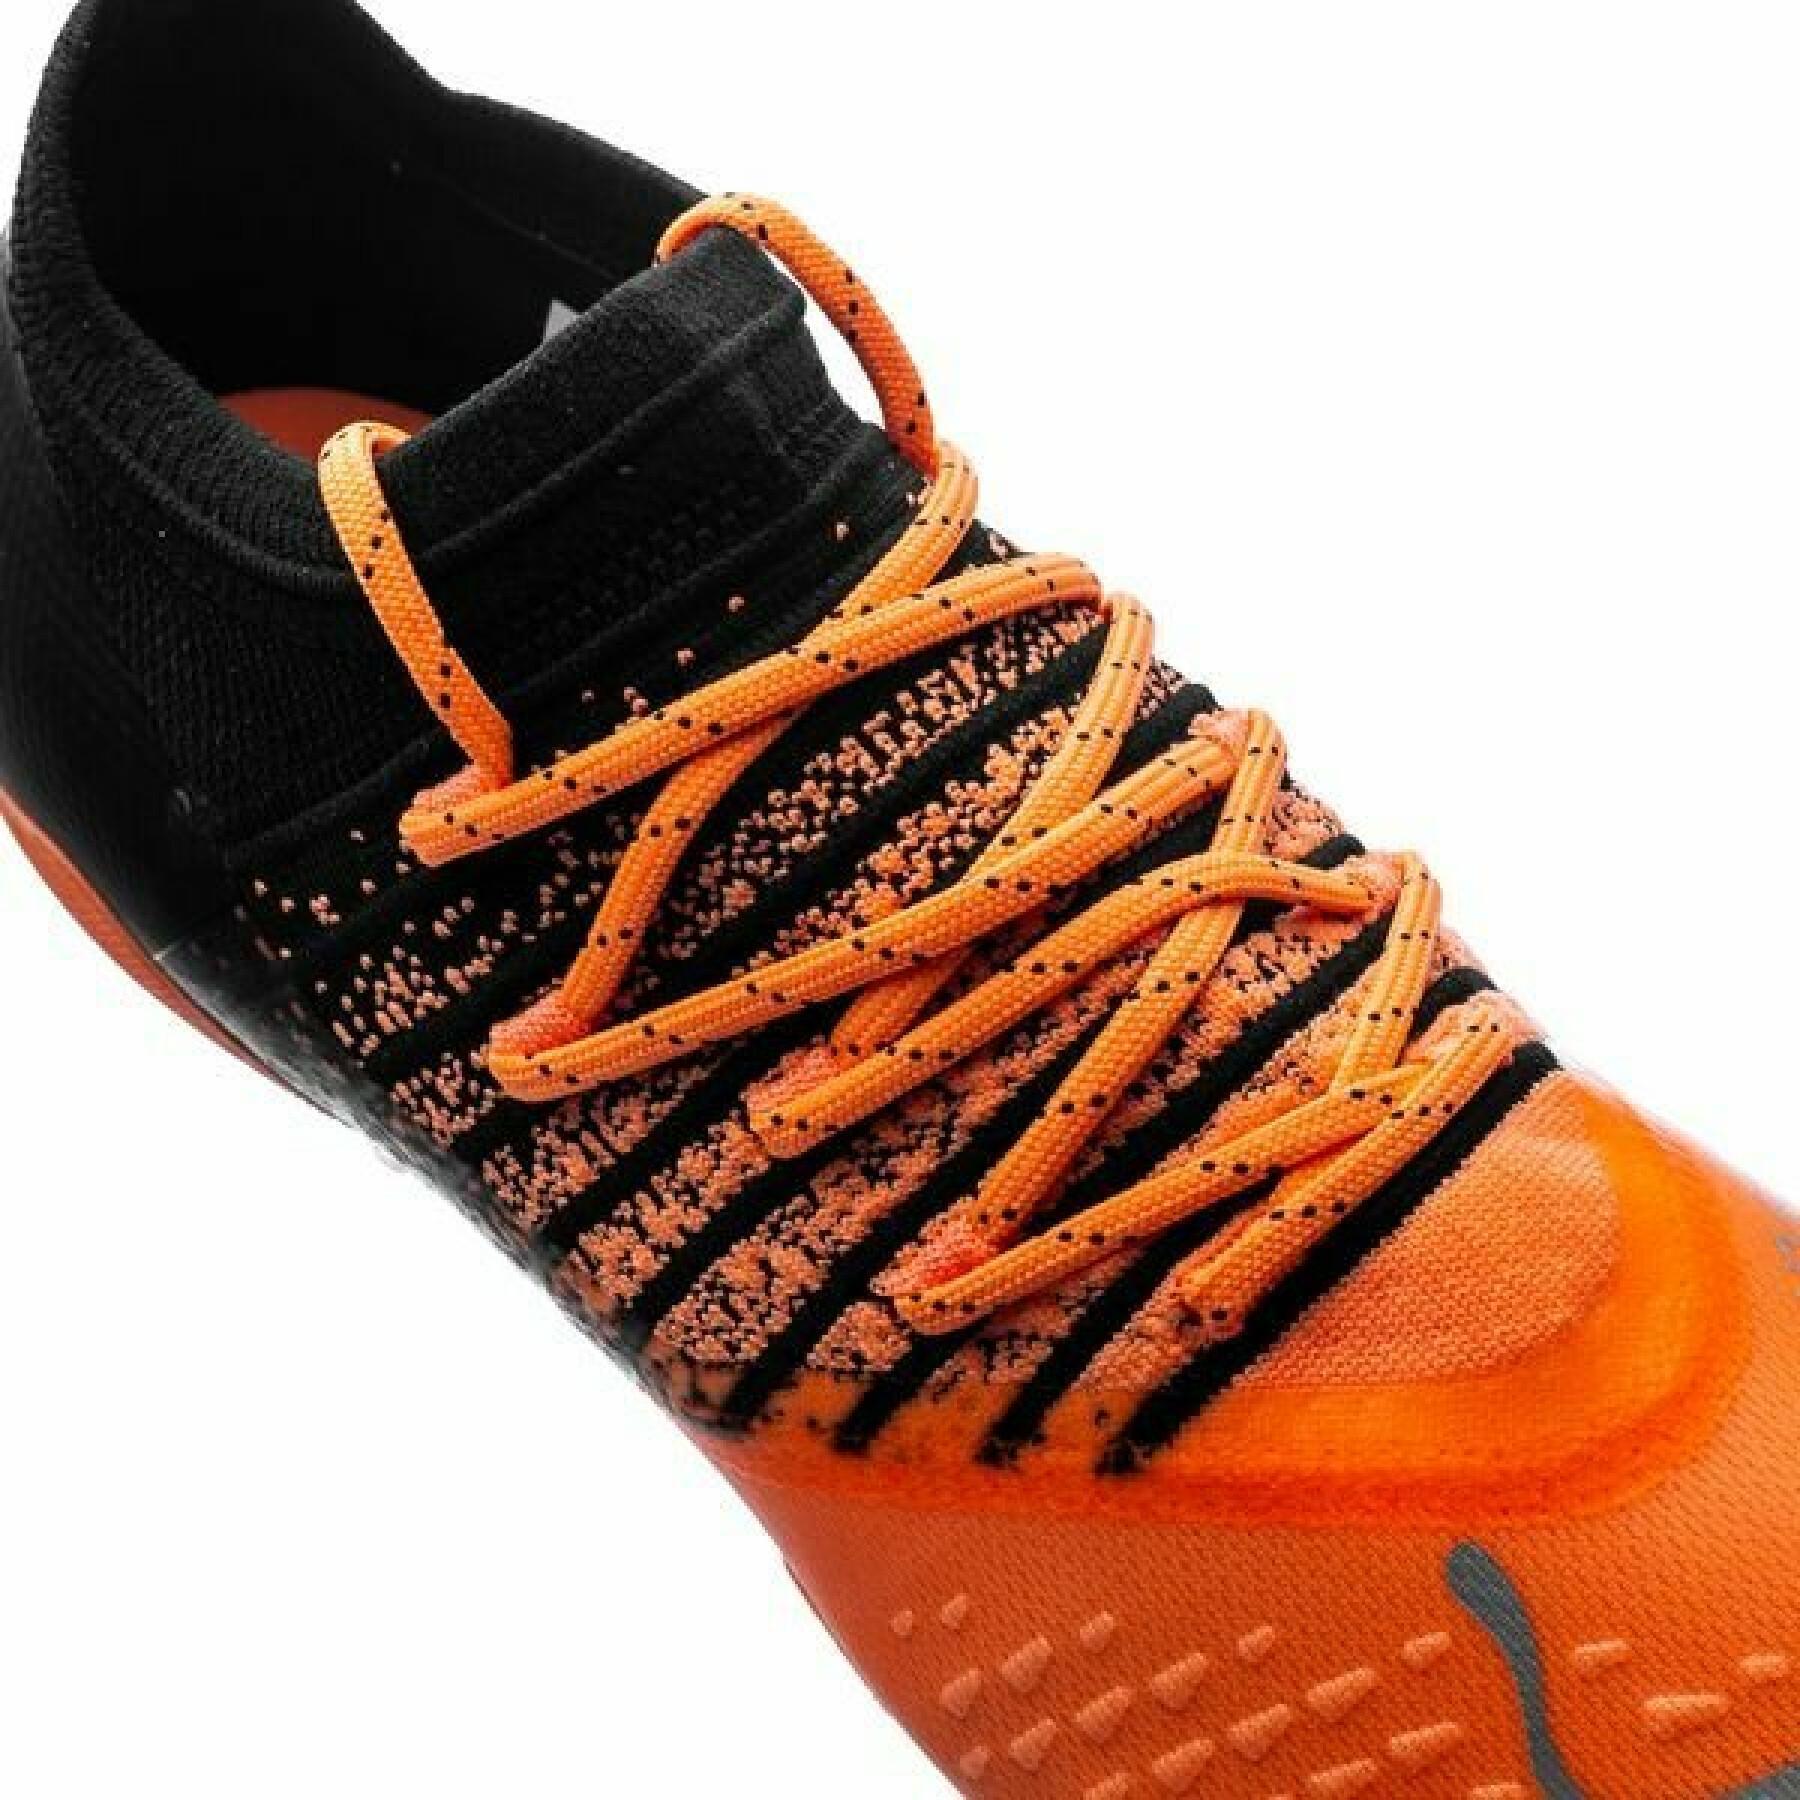 Soccer shoes Puma FUTURE Z 2.3 FG/AG - Instinct Pack